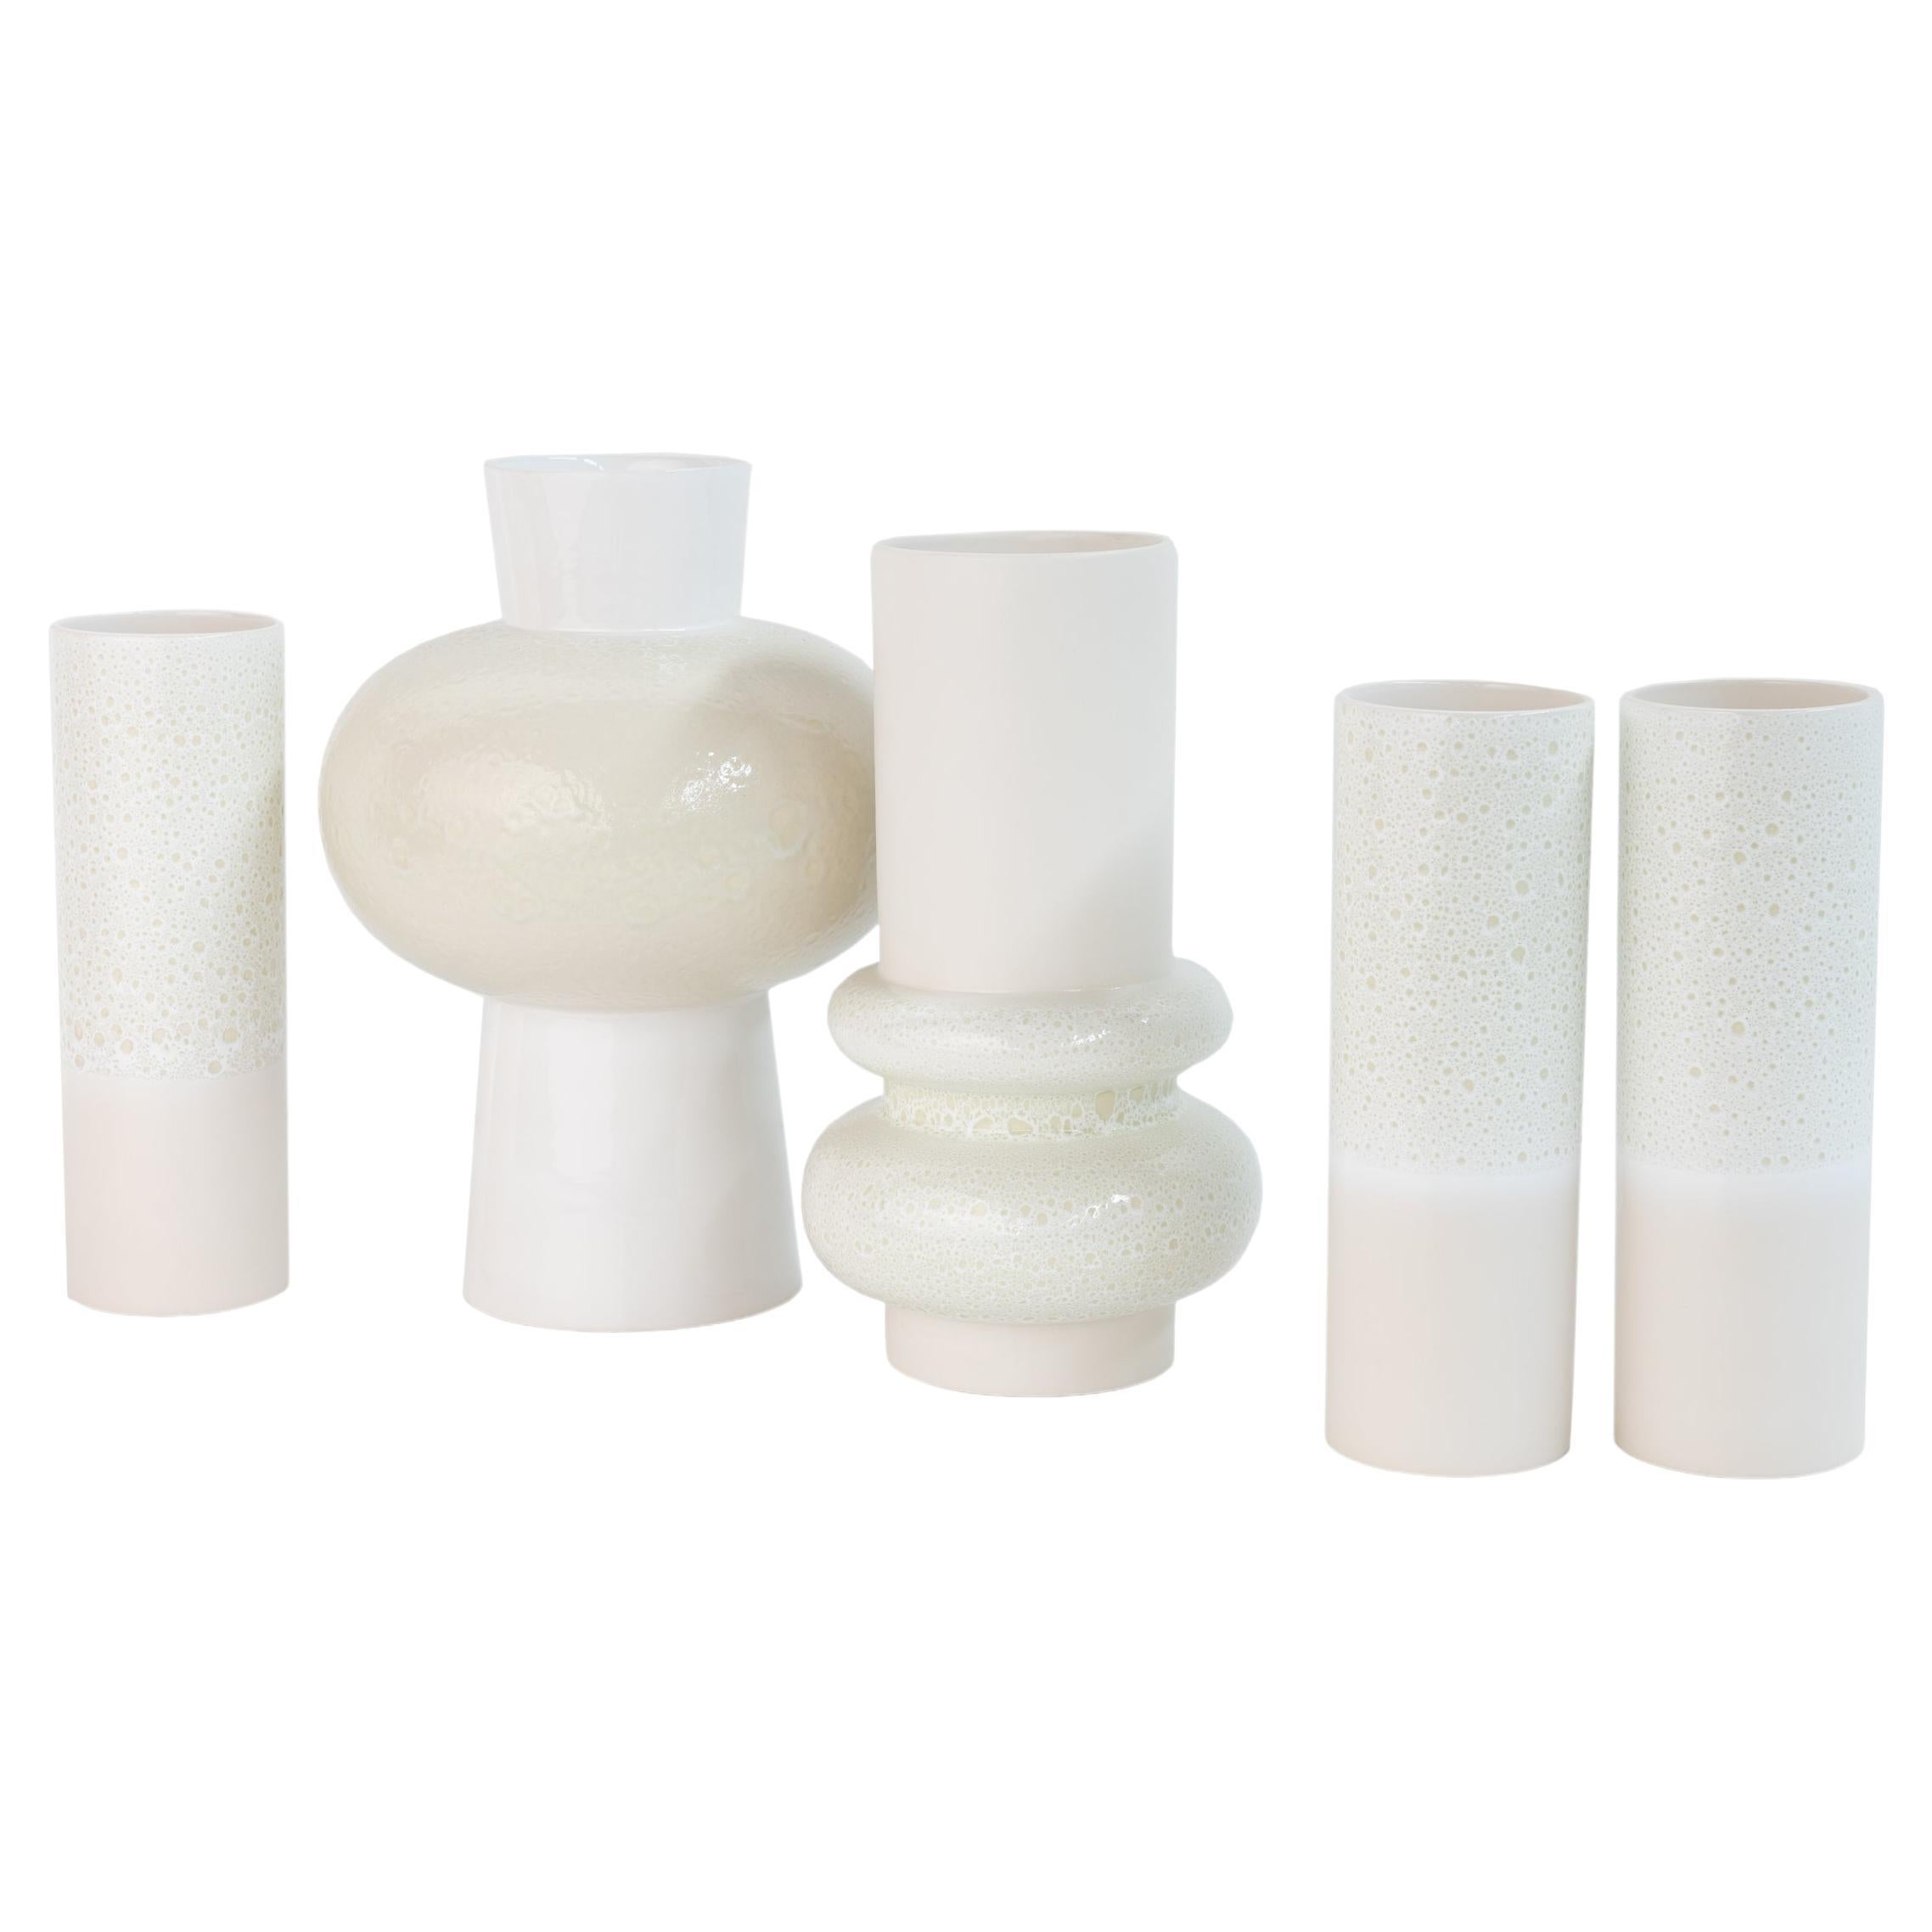 Set/5 Vases, Ceramic Vases, White, Handmade in Portugal by Lusitanus Home